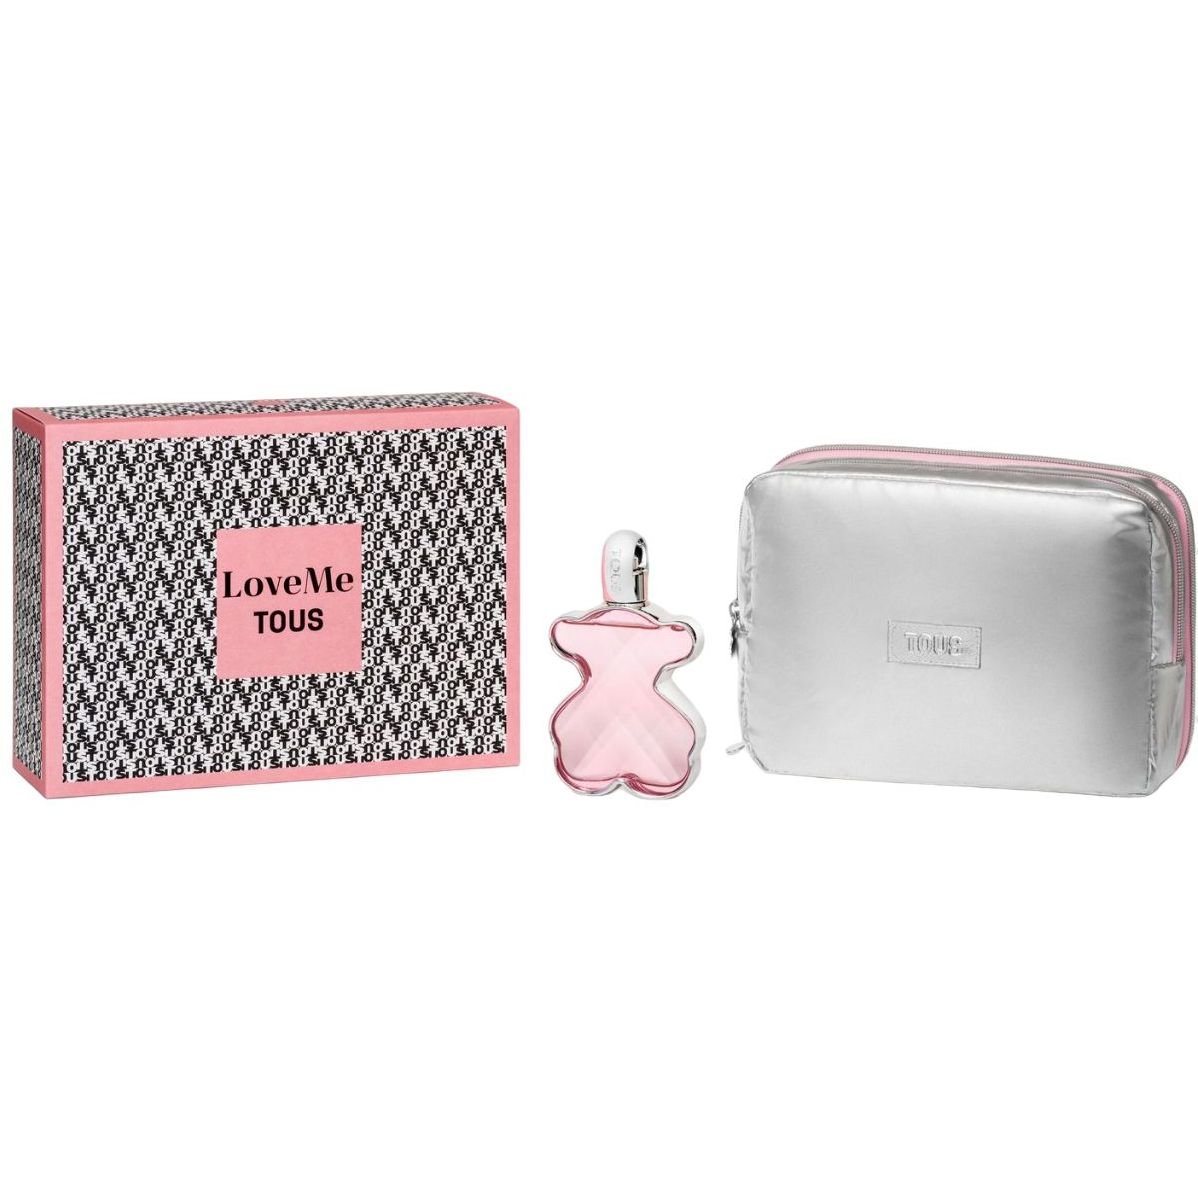 Подарочный набор для женщин Tous LoveMe Eau De Parfum, 90 мл + косметичка - фото 1